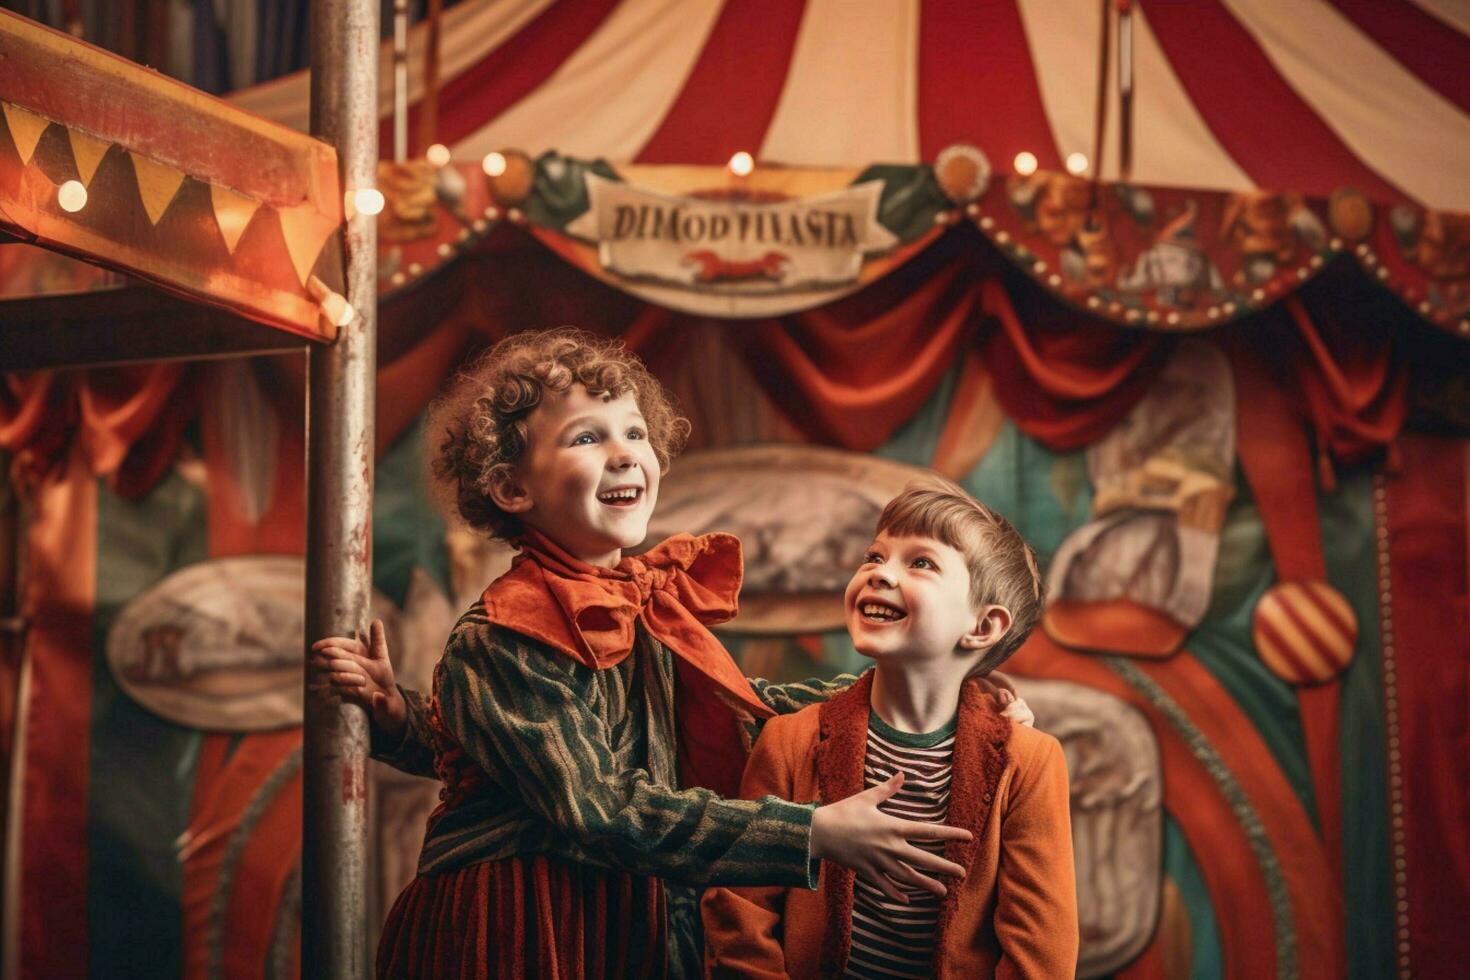 barn njuter en dag på de cirkus foto